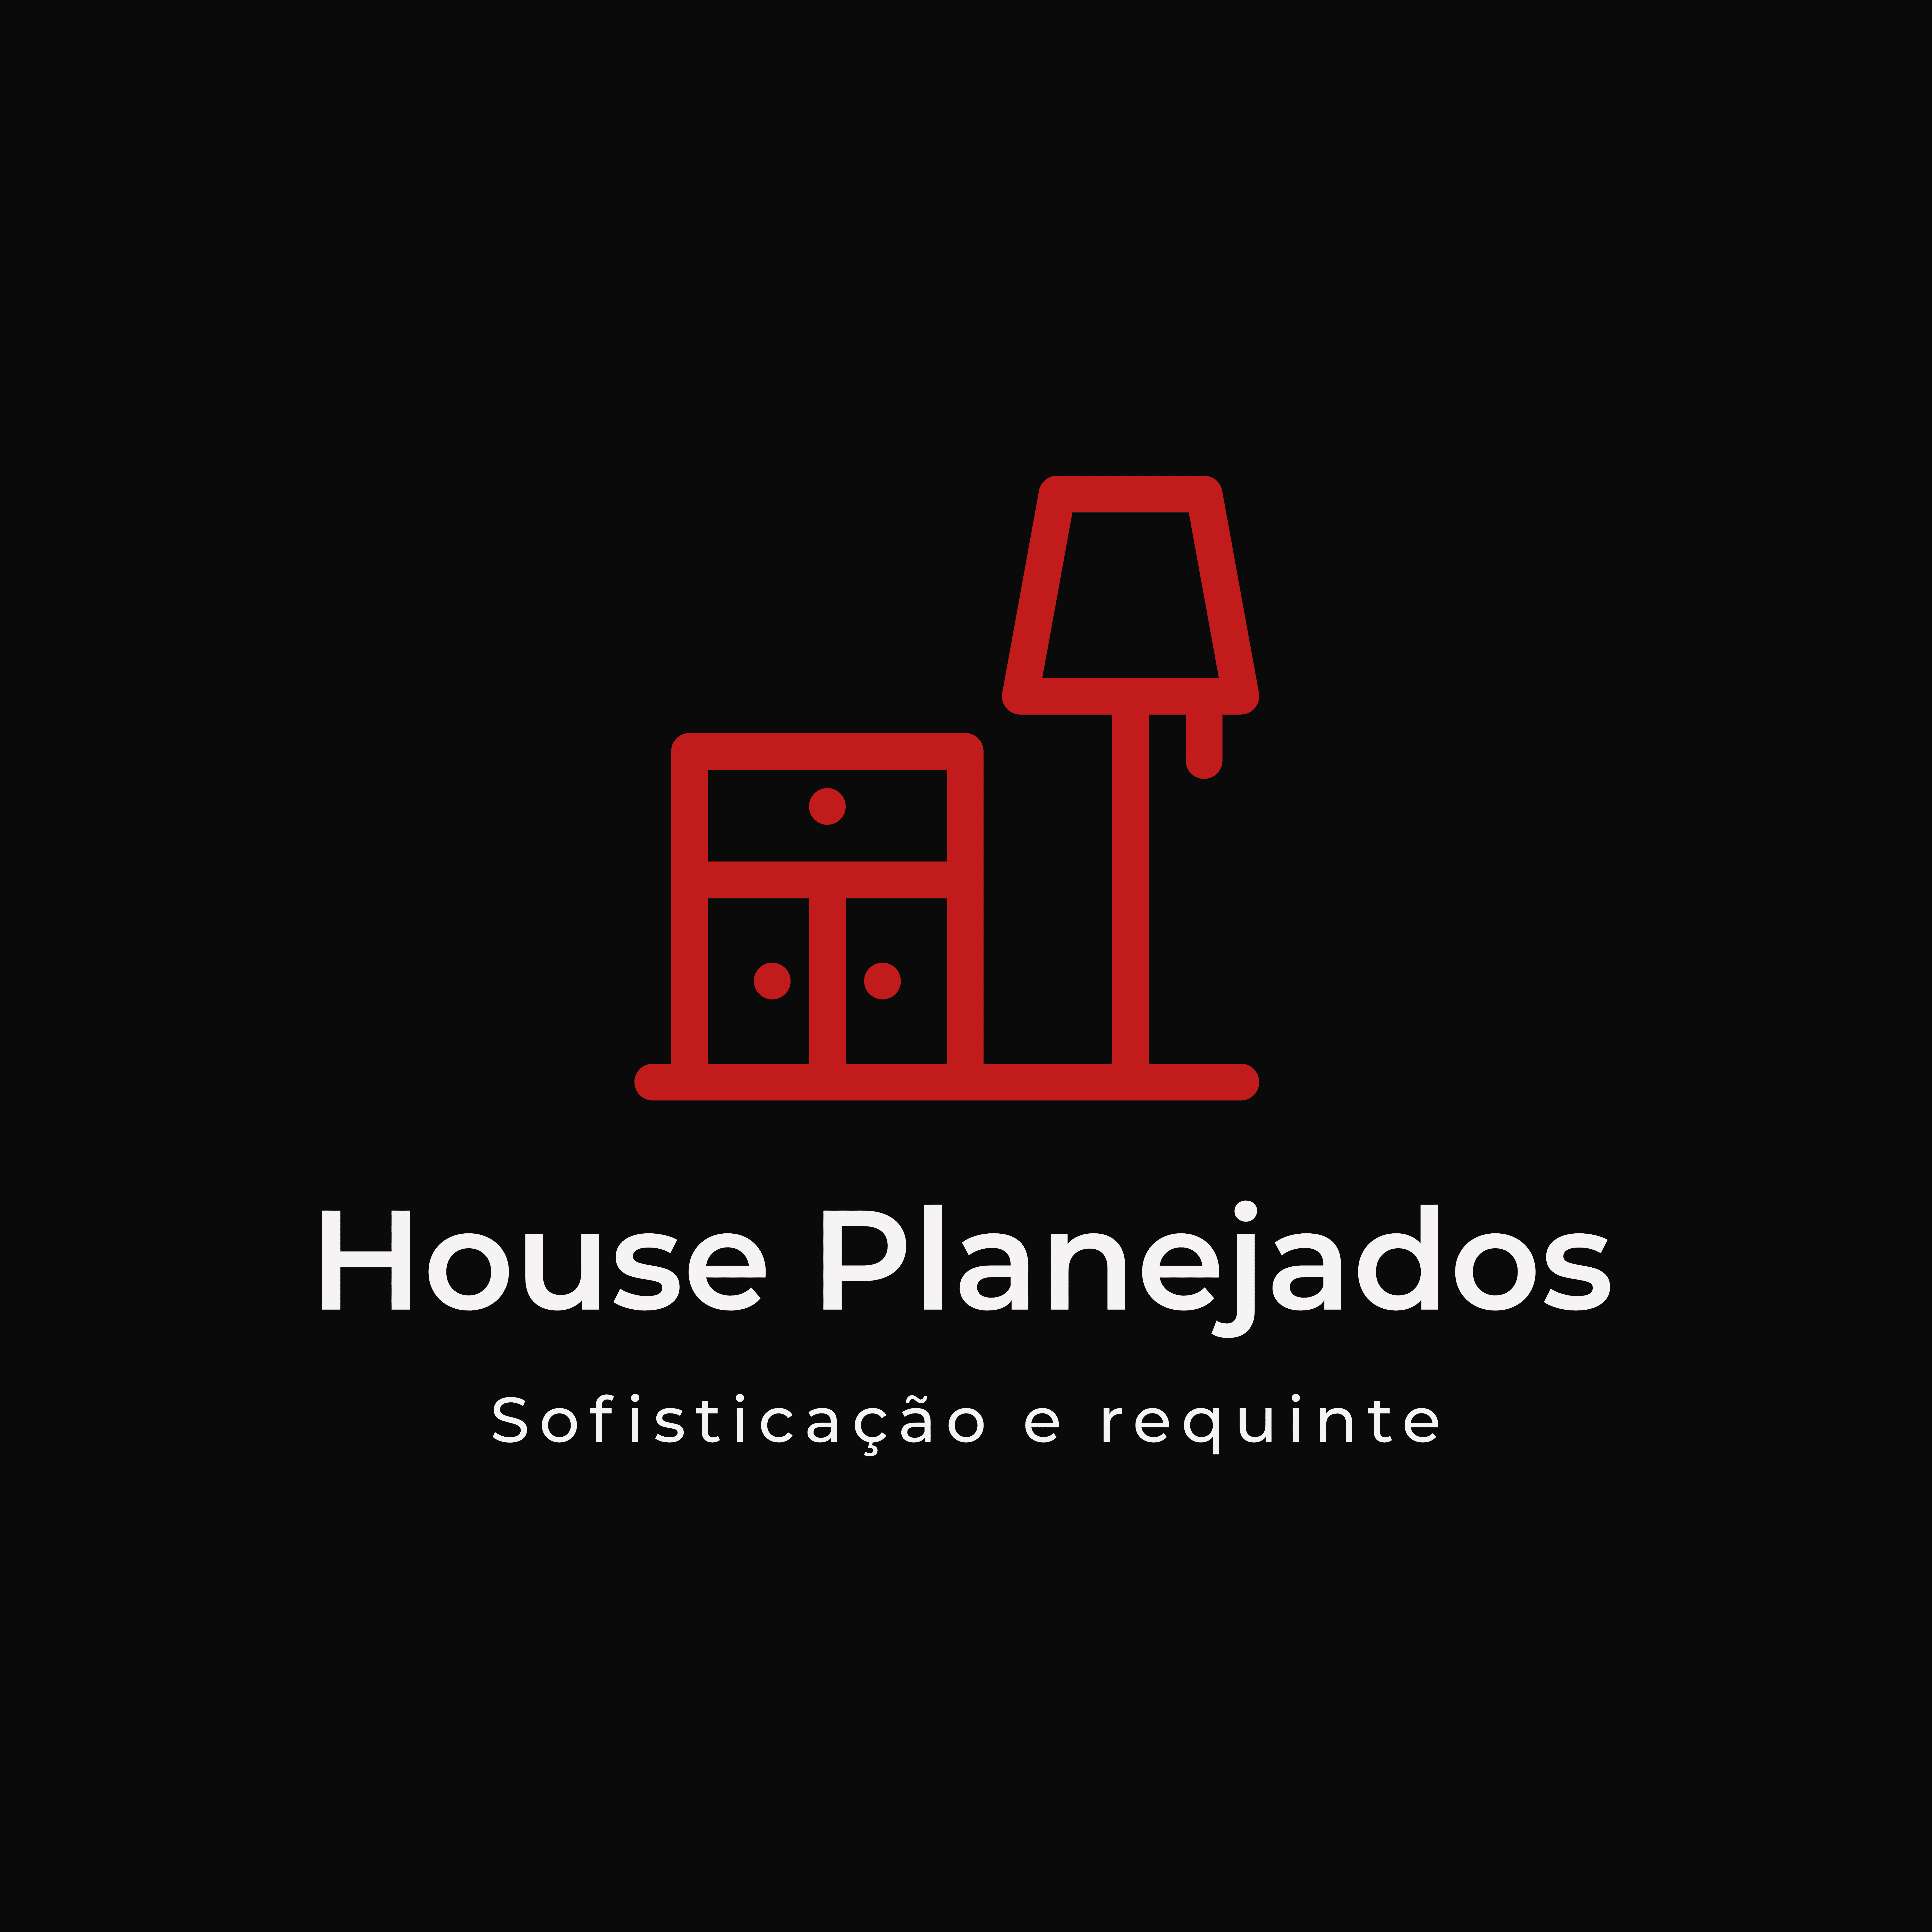 House Planejados